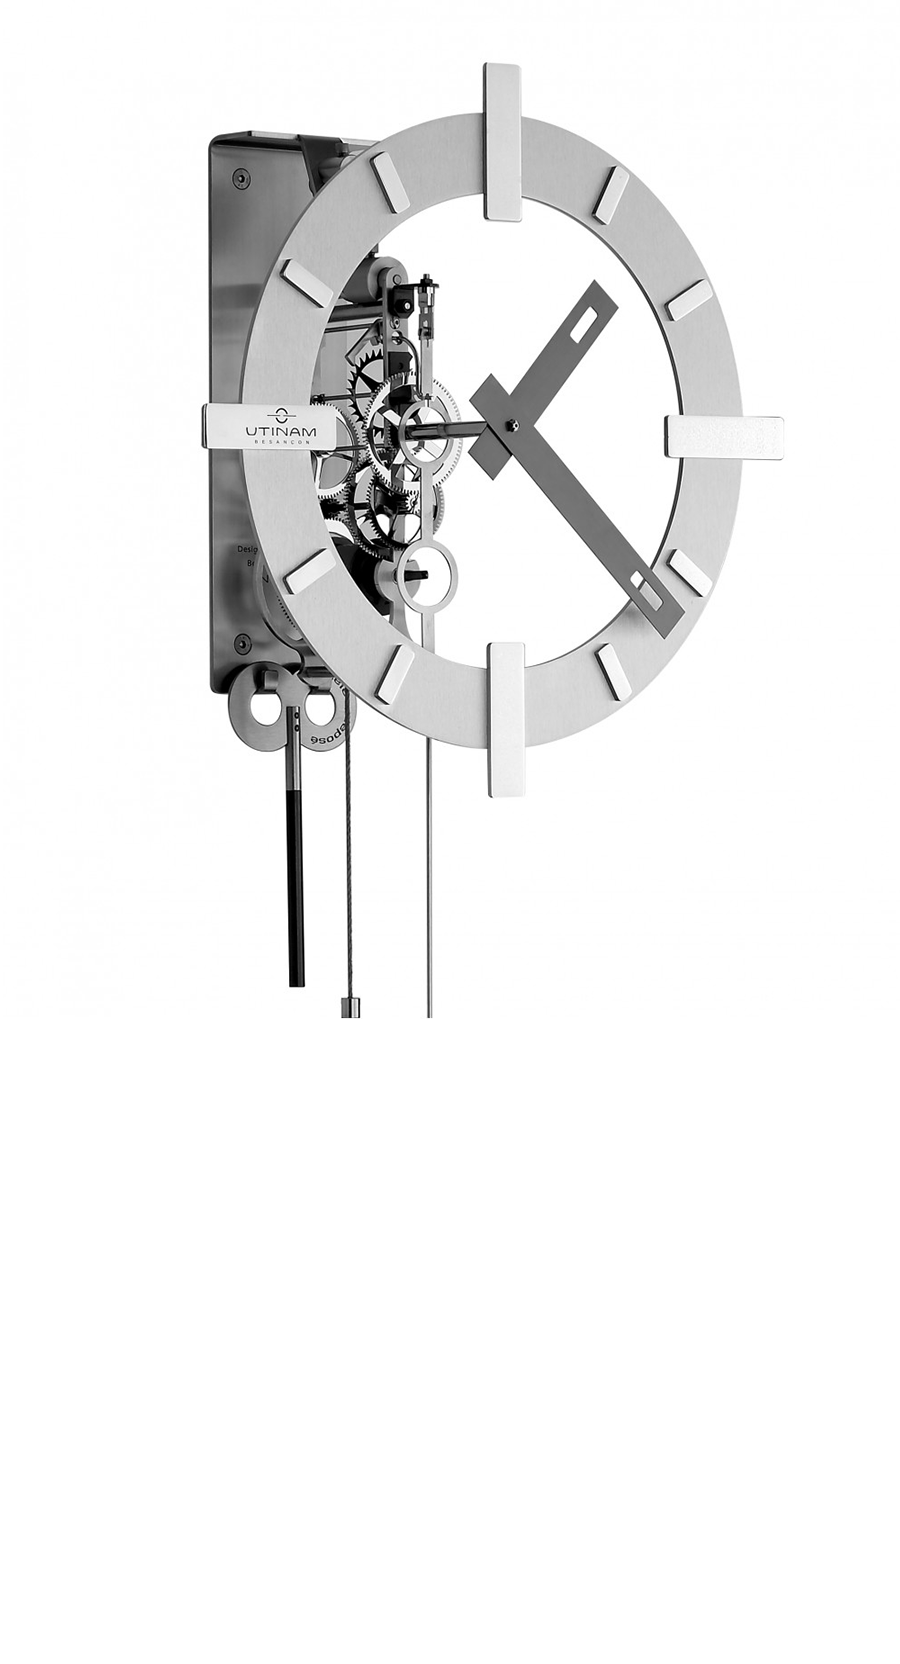 Horloge Utinam - Model LALA cadran